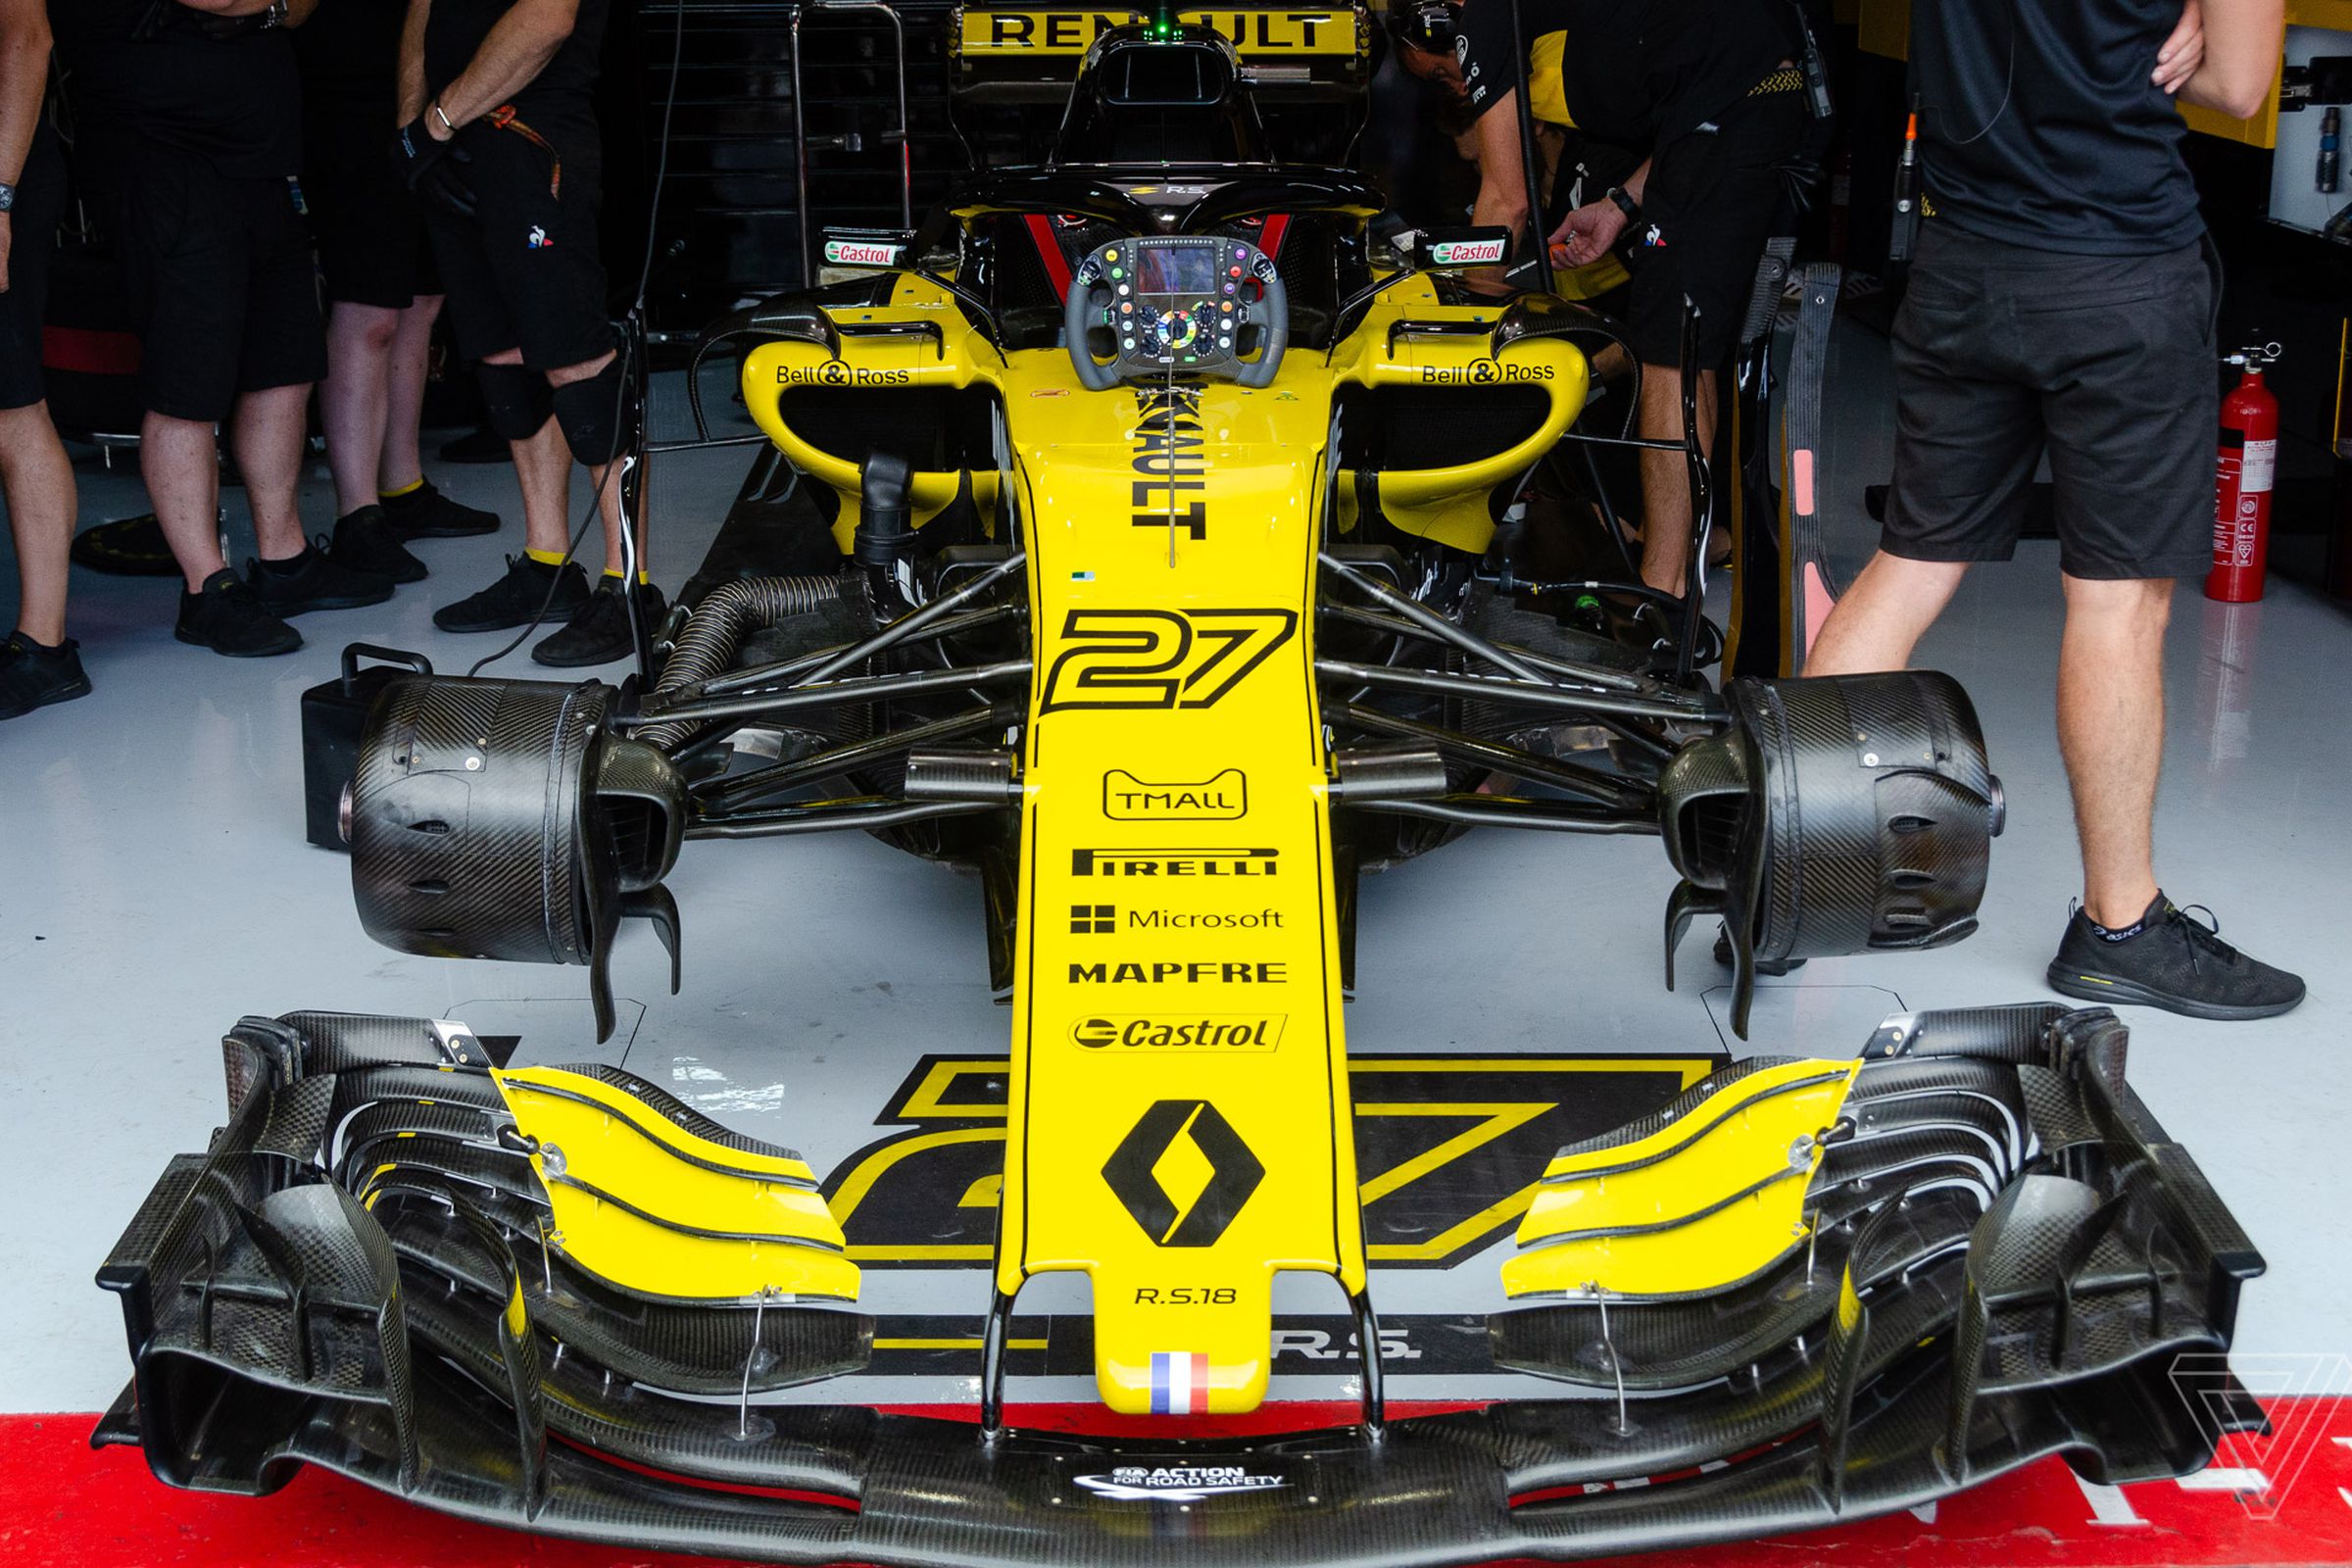 Renault Sport Formula 1